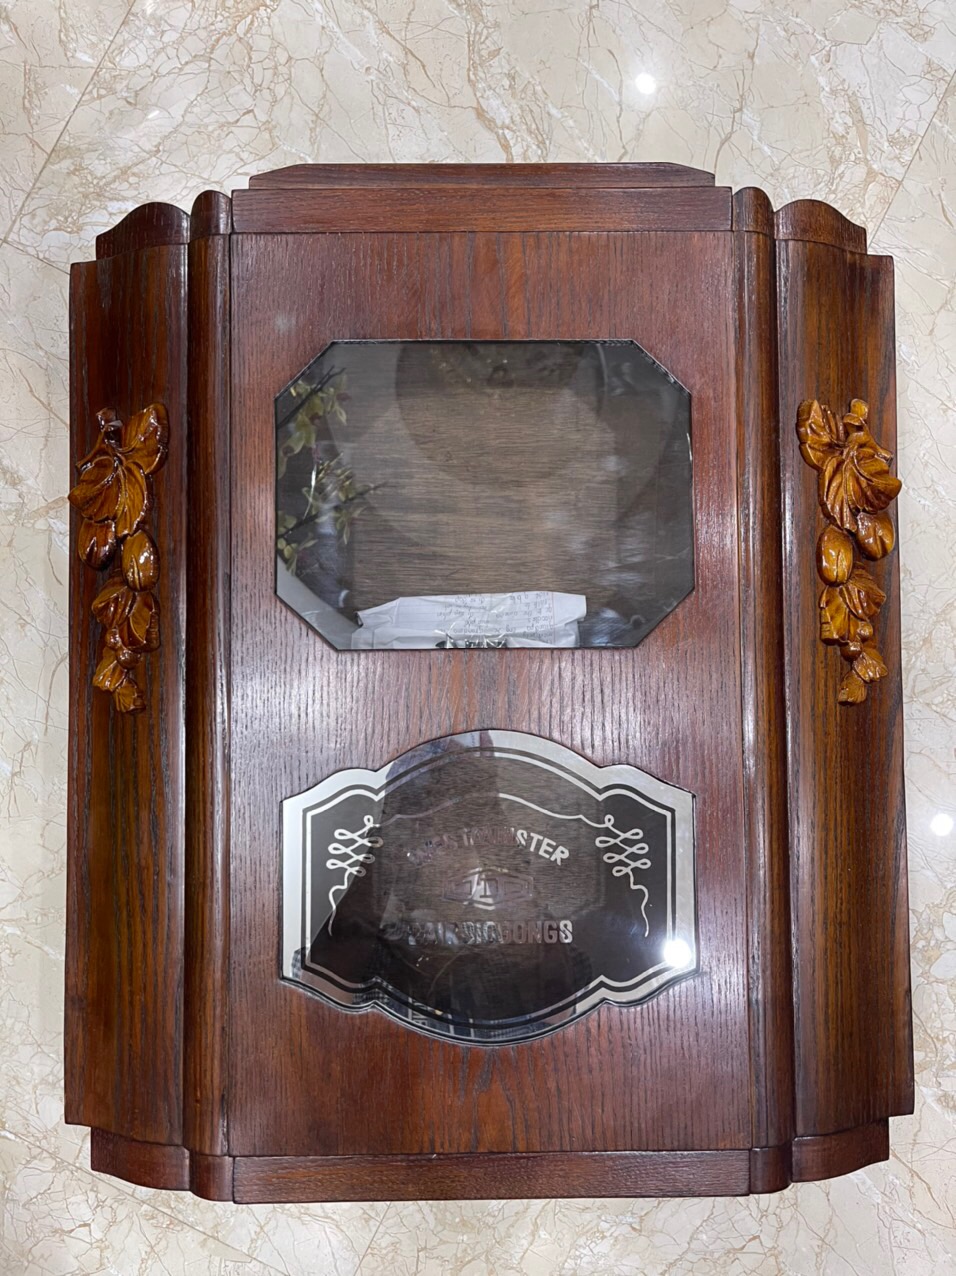 Vỏ thùng đồng hồ ODO, FFR mặt bát giác nằm, làm bằng gỗ sồi - mã số MS910